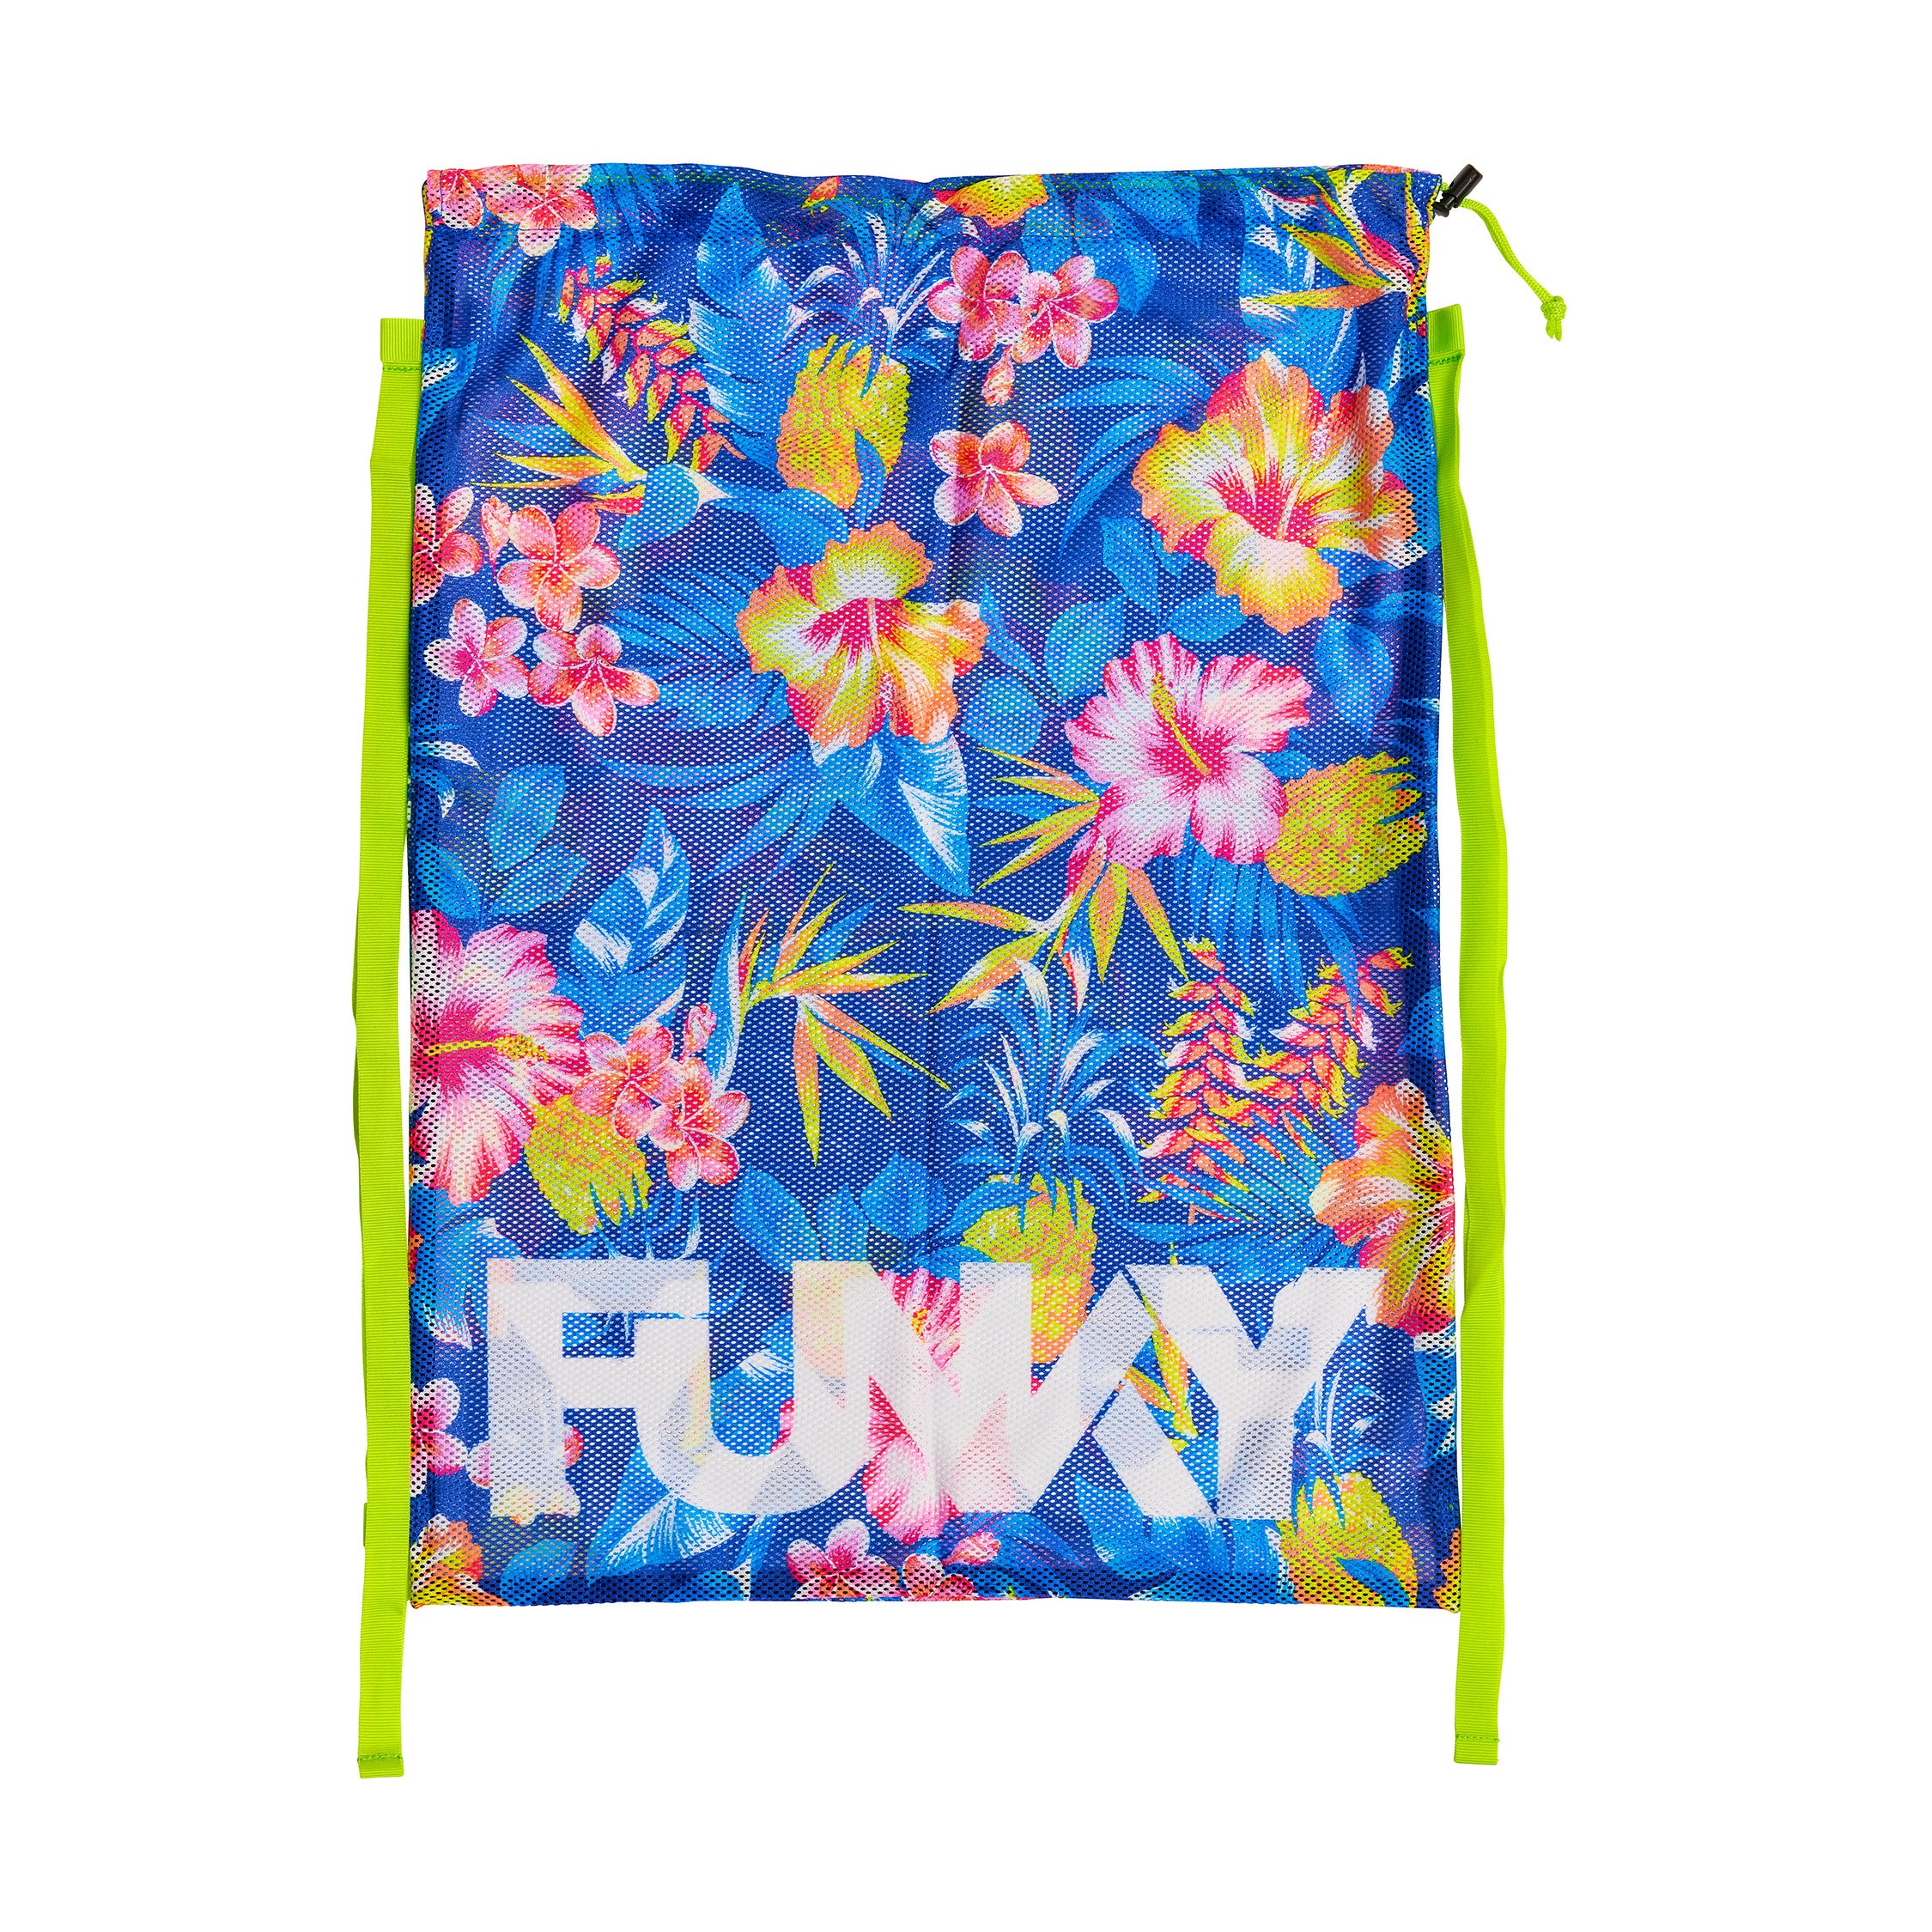 Funky - In Bloom - Mesh Gear Bag